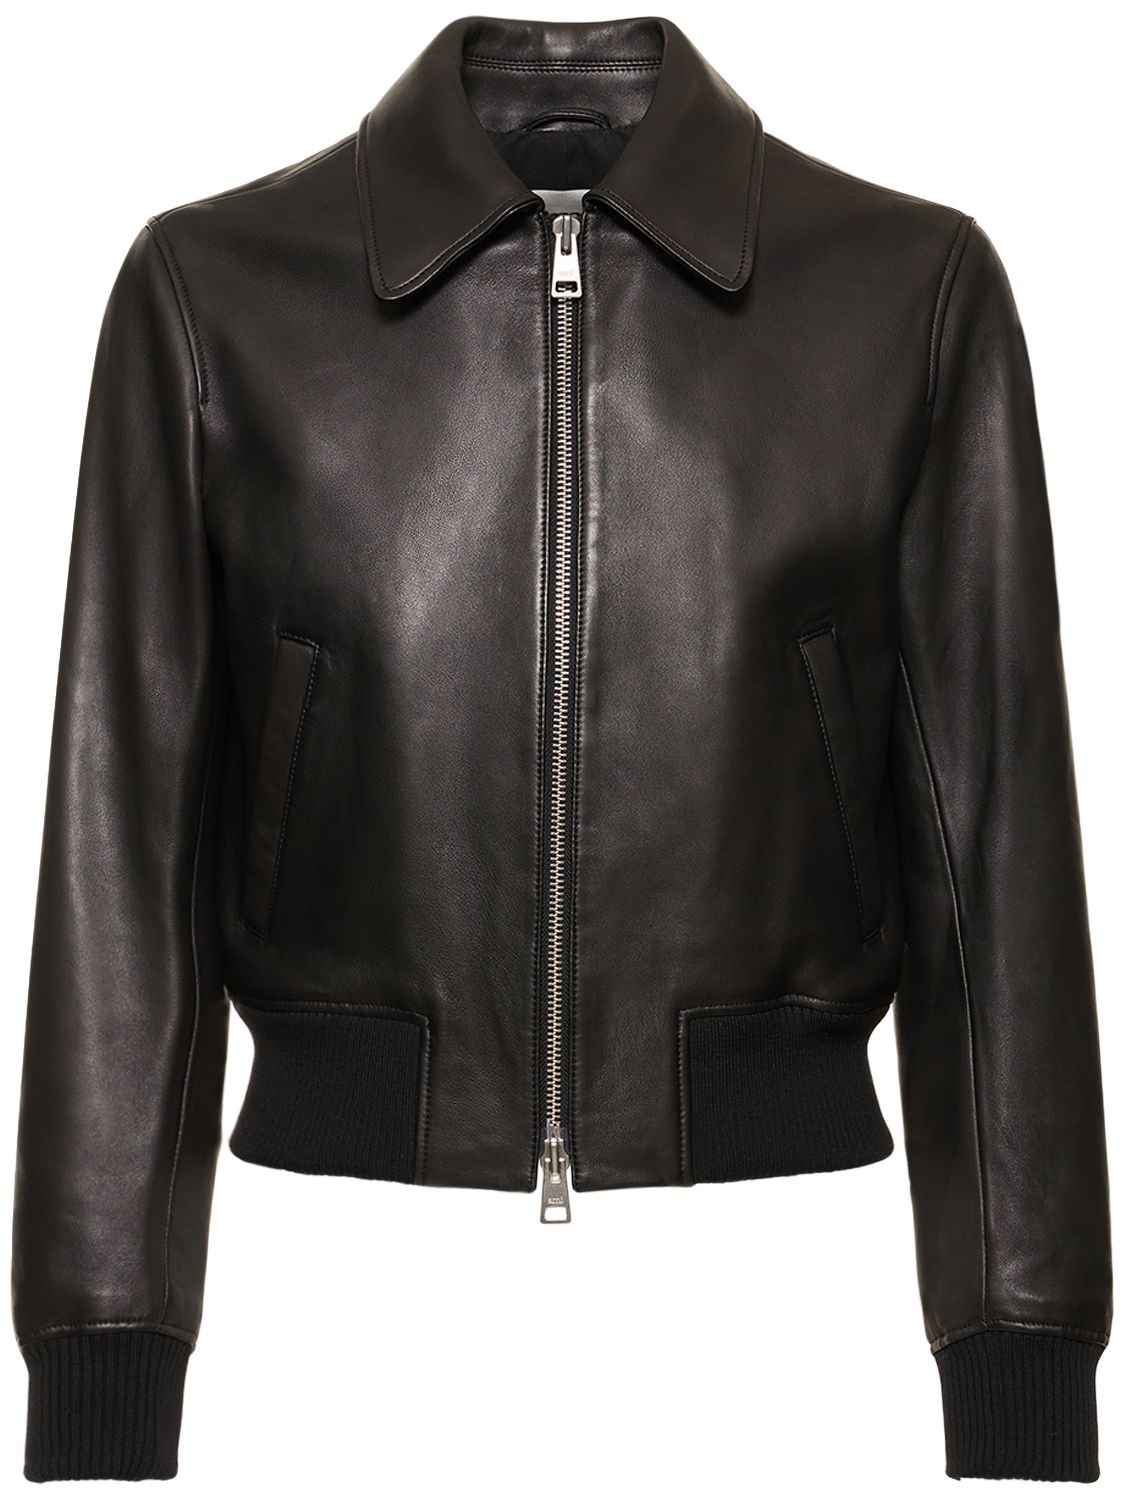 Smooth Leather Zipped Jacket – MEN > CLOTHING > JACKETS